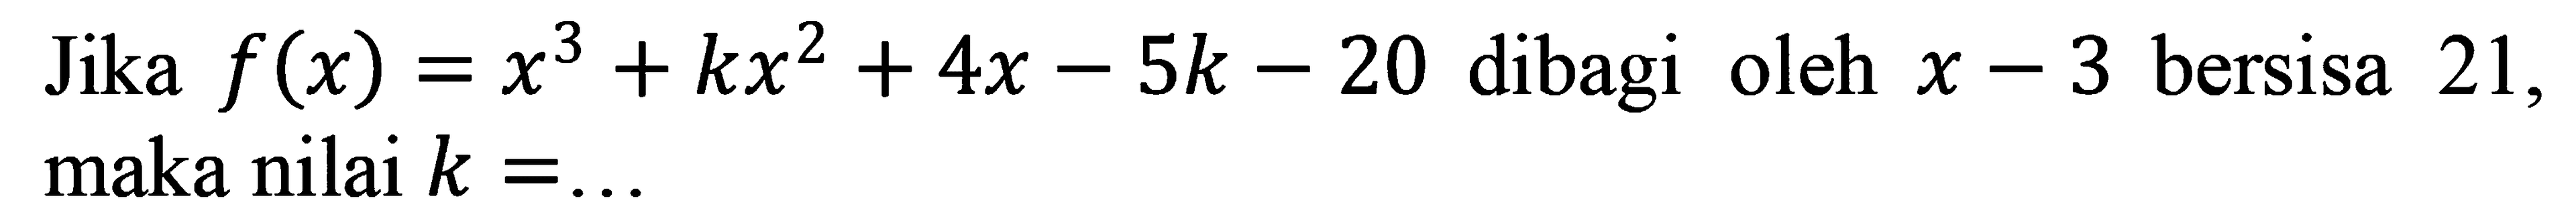 Jika f(x) = x^3 + kx^2 + 4x - 5k - 20 dibagi oleh x - 3 bersisa 21, maka nilai k =